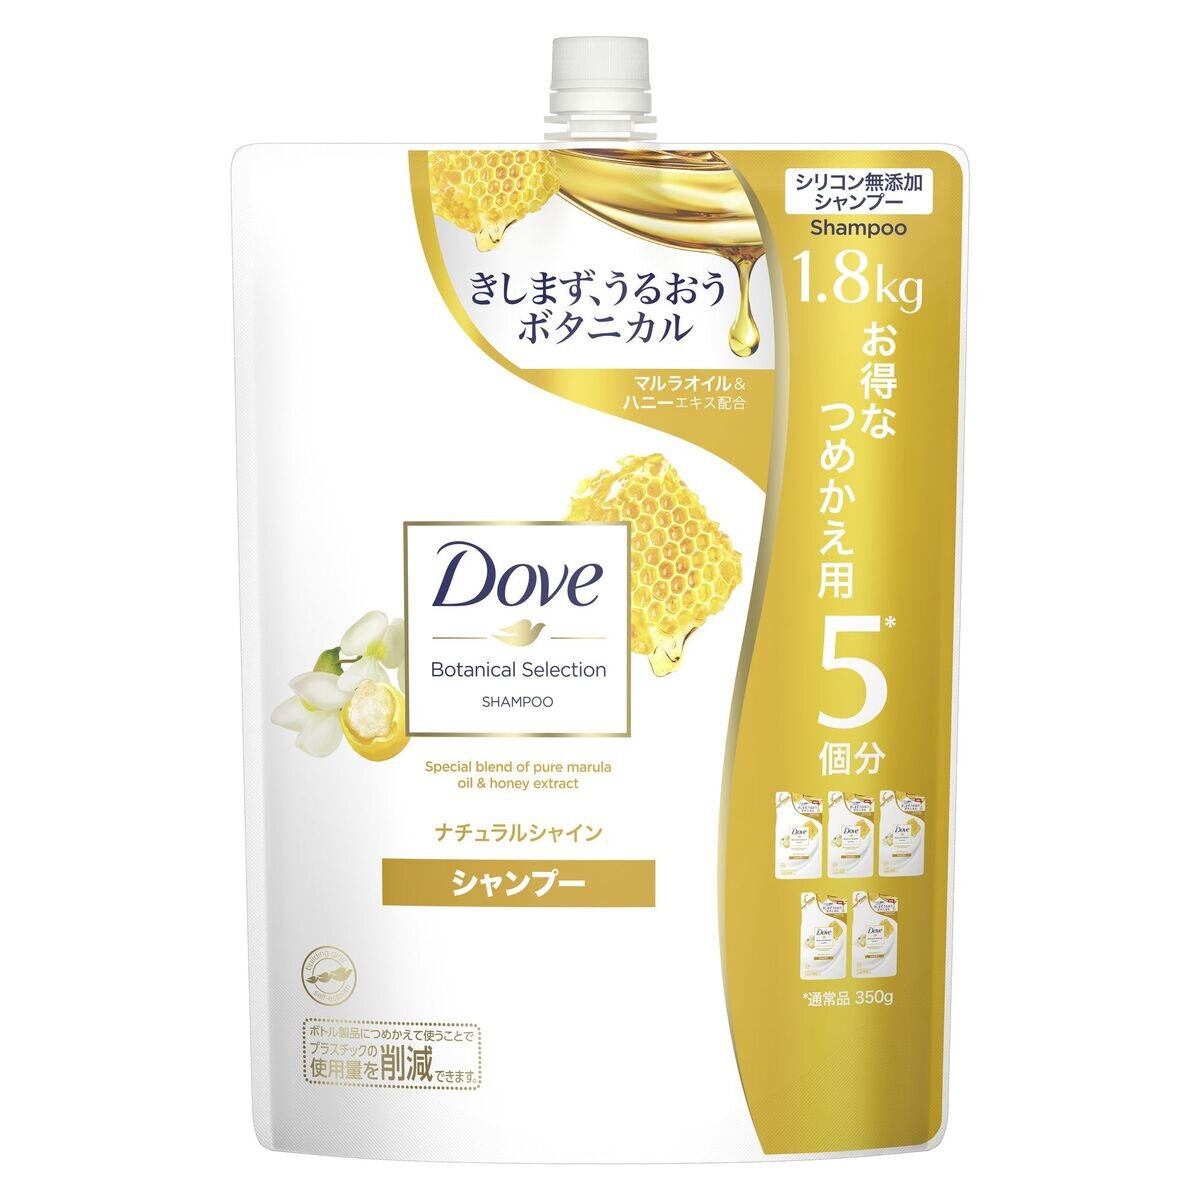 Dove (ダヴ) ボタニカルセレクション ナチュラルシャイン シャンプー 1.8kg